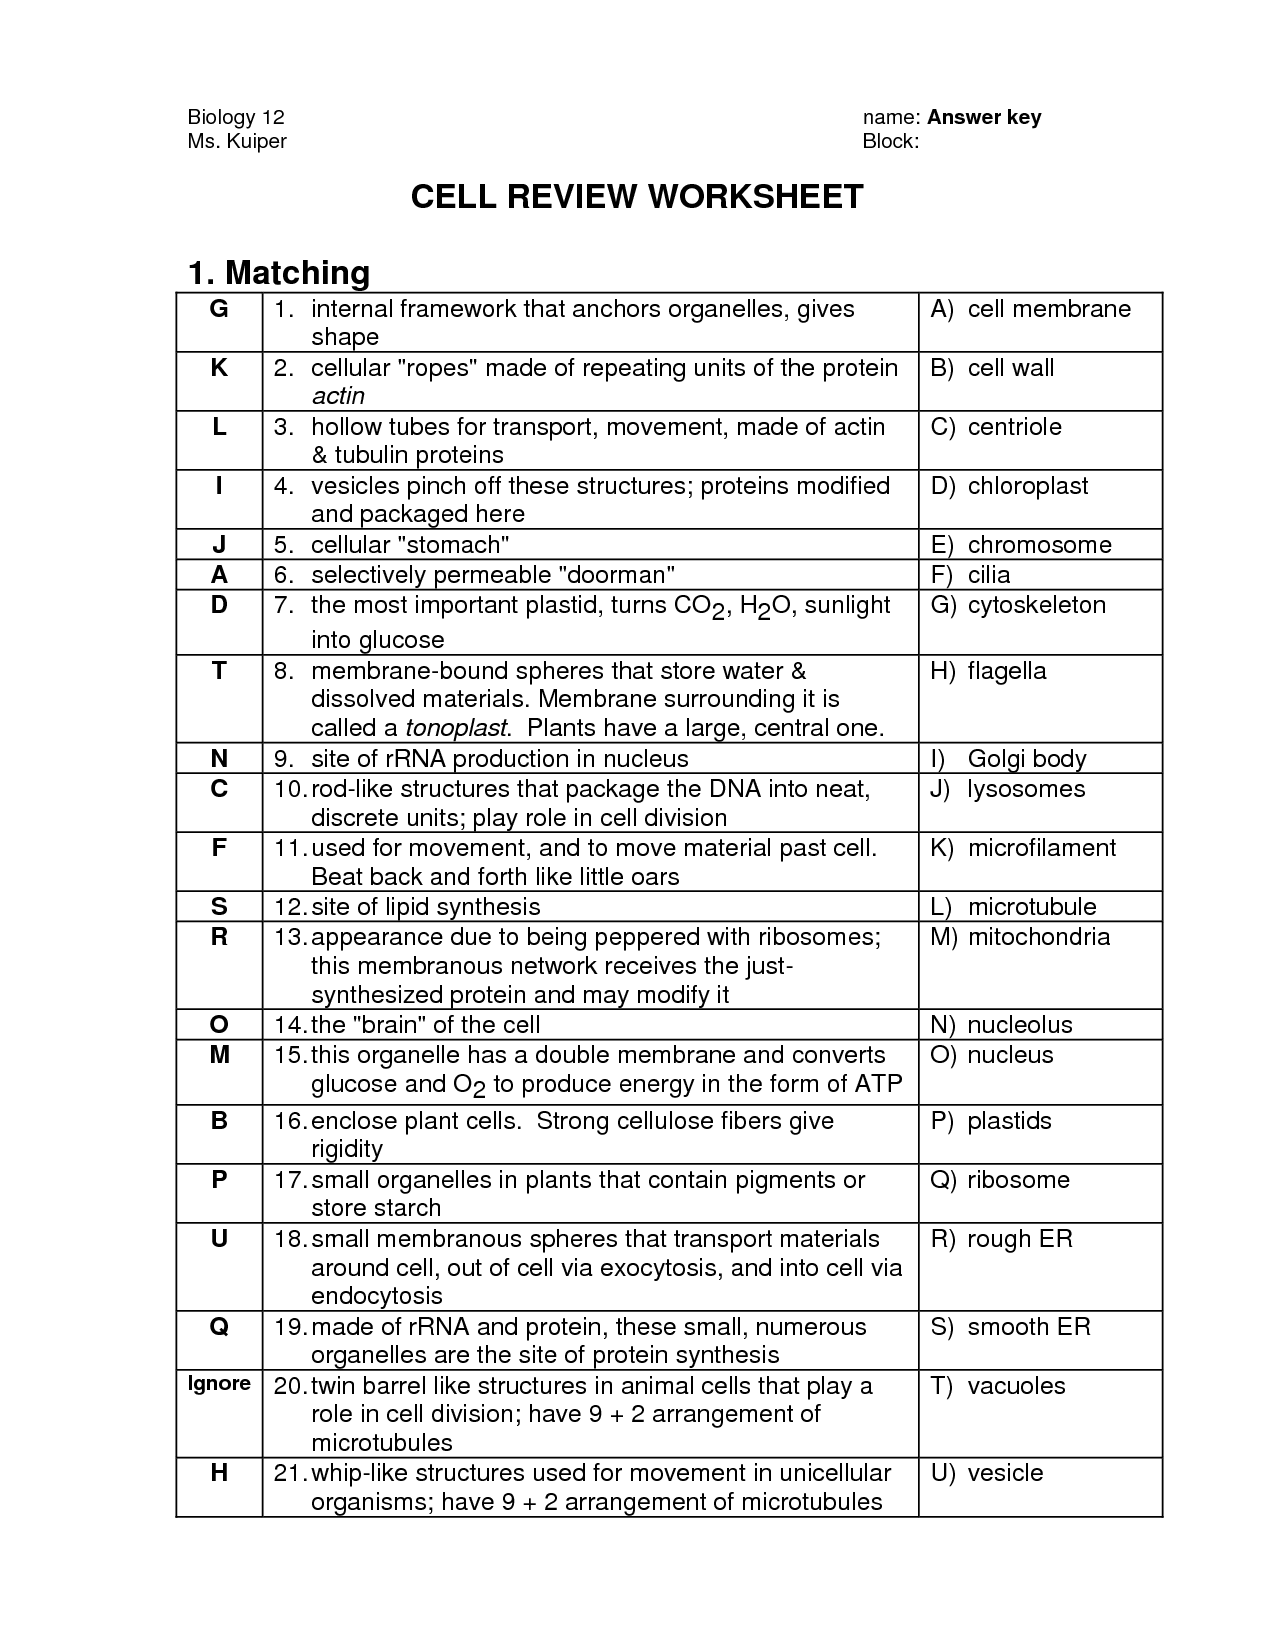 Biology Cell Organelles Worksheet